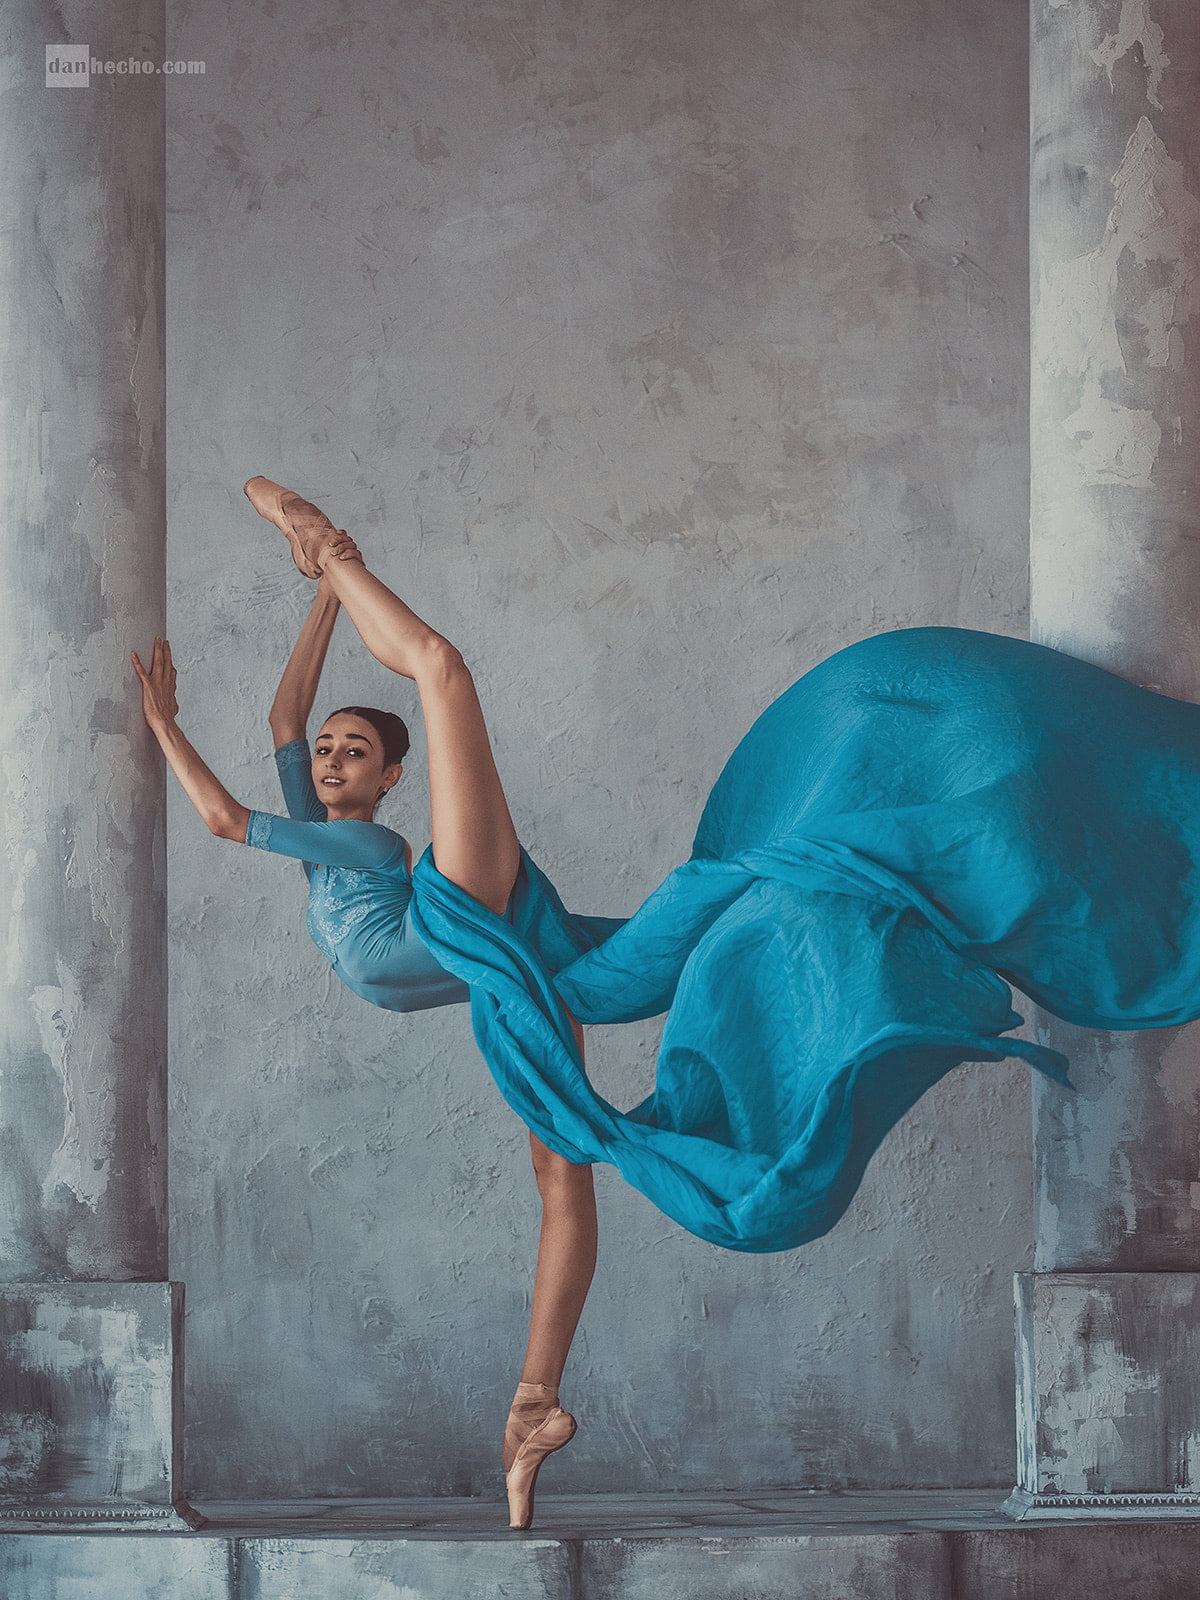 women, dancer, Dan Hecho, flexible, ballerina